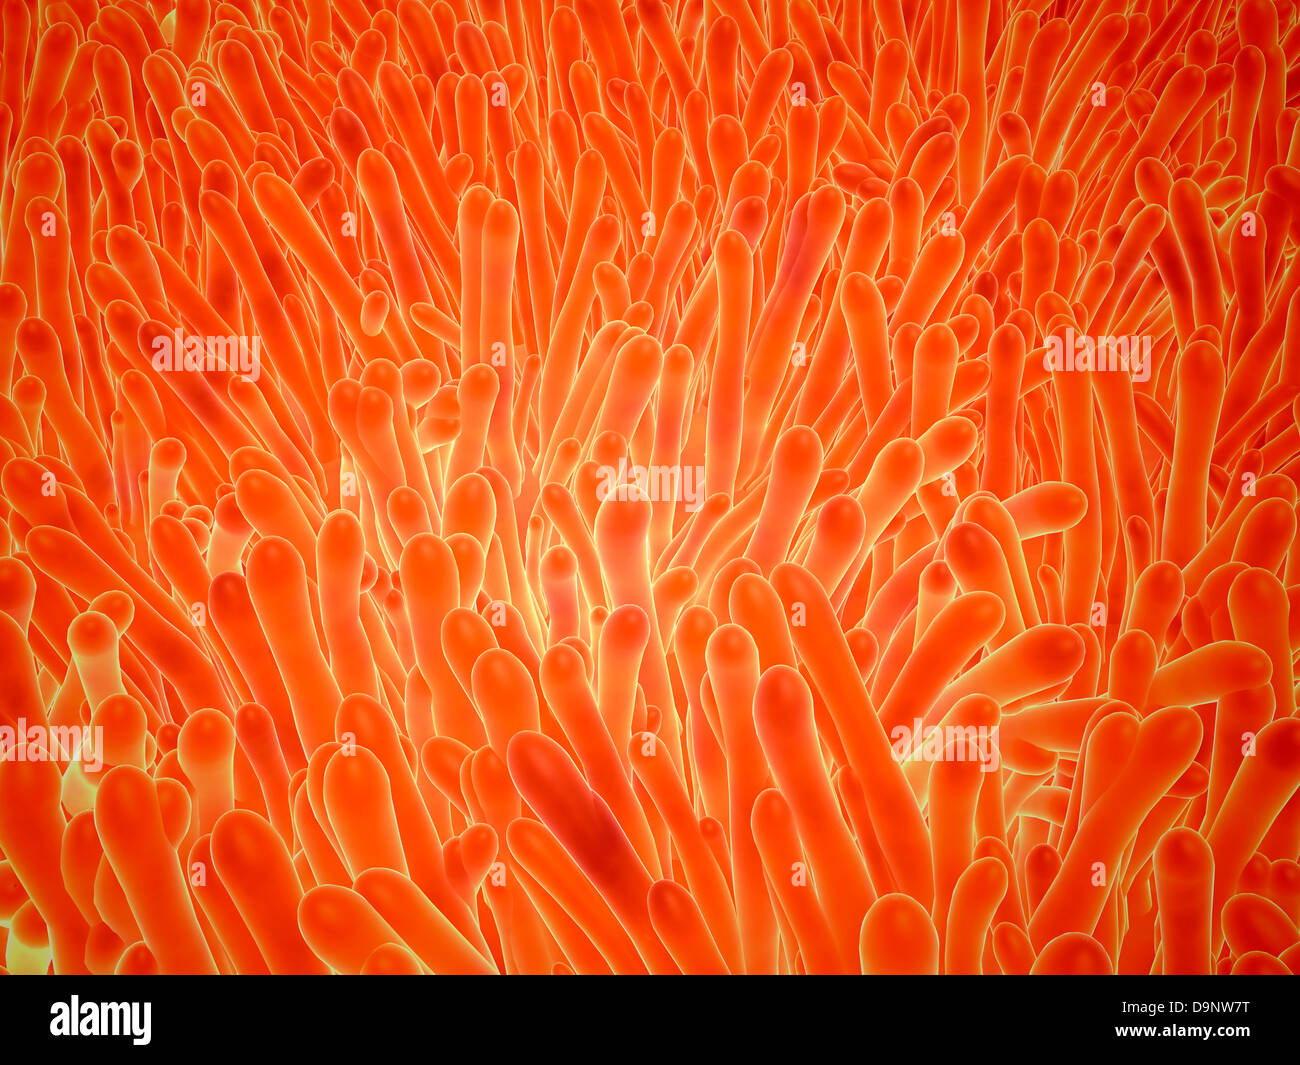 Mikroskopische Ansicht der Darmzotten, die innerhalb des Dünndarms gefunden werden kann. Stockfoto